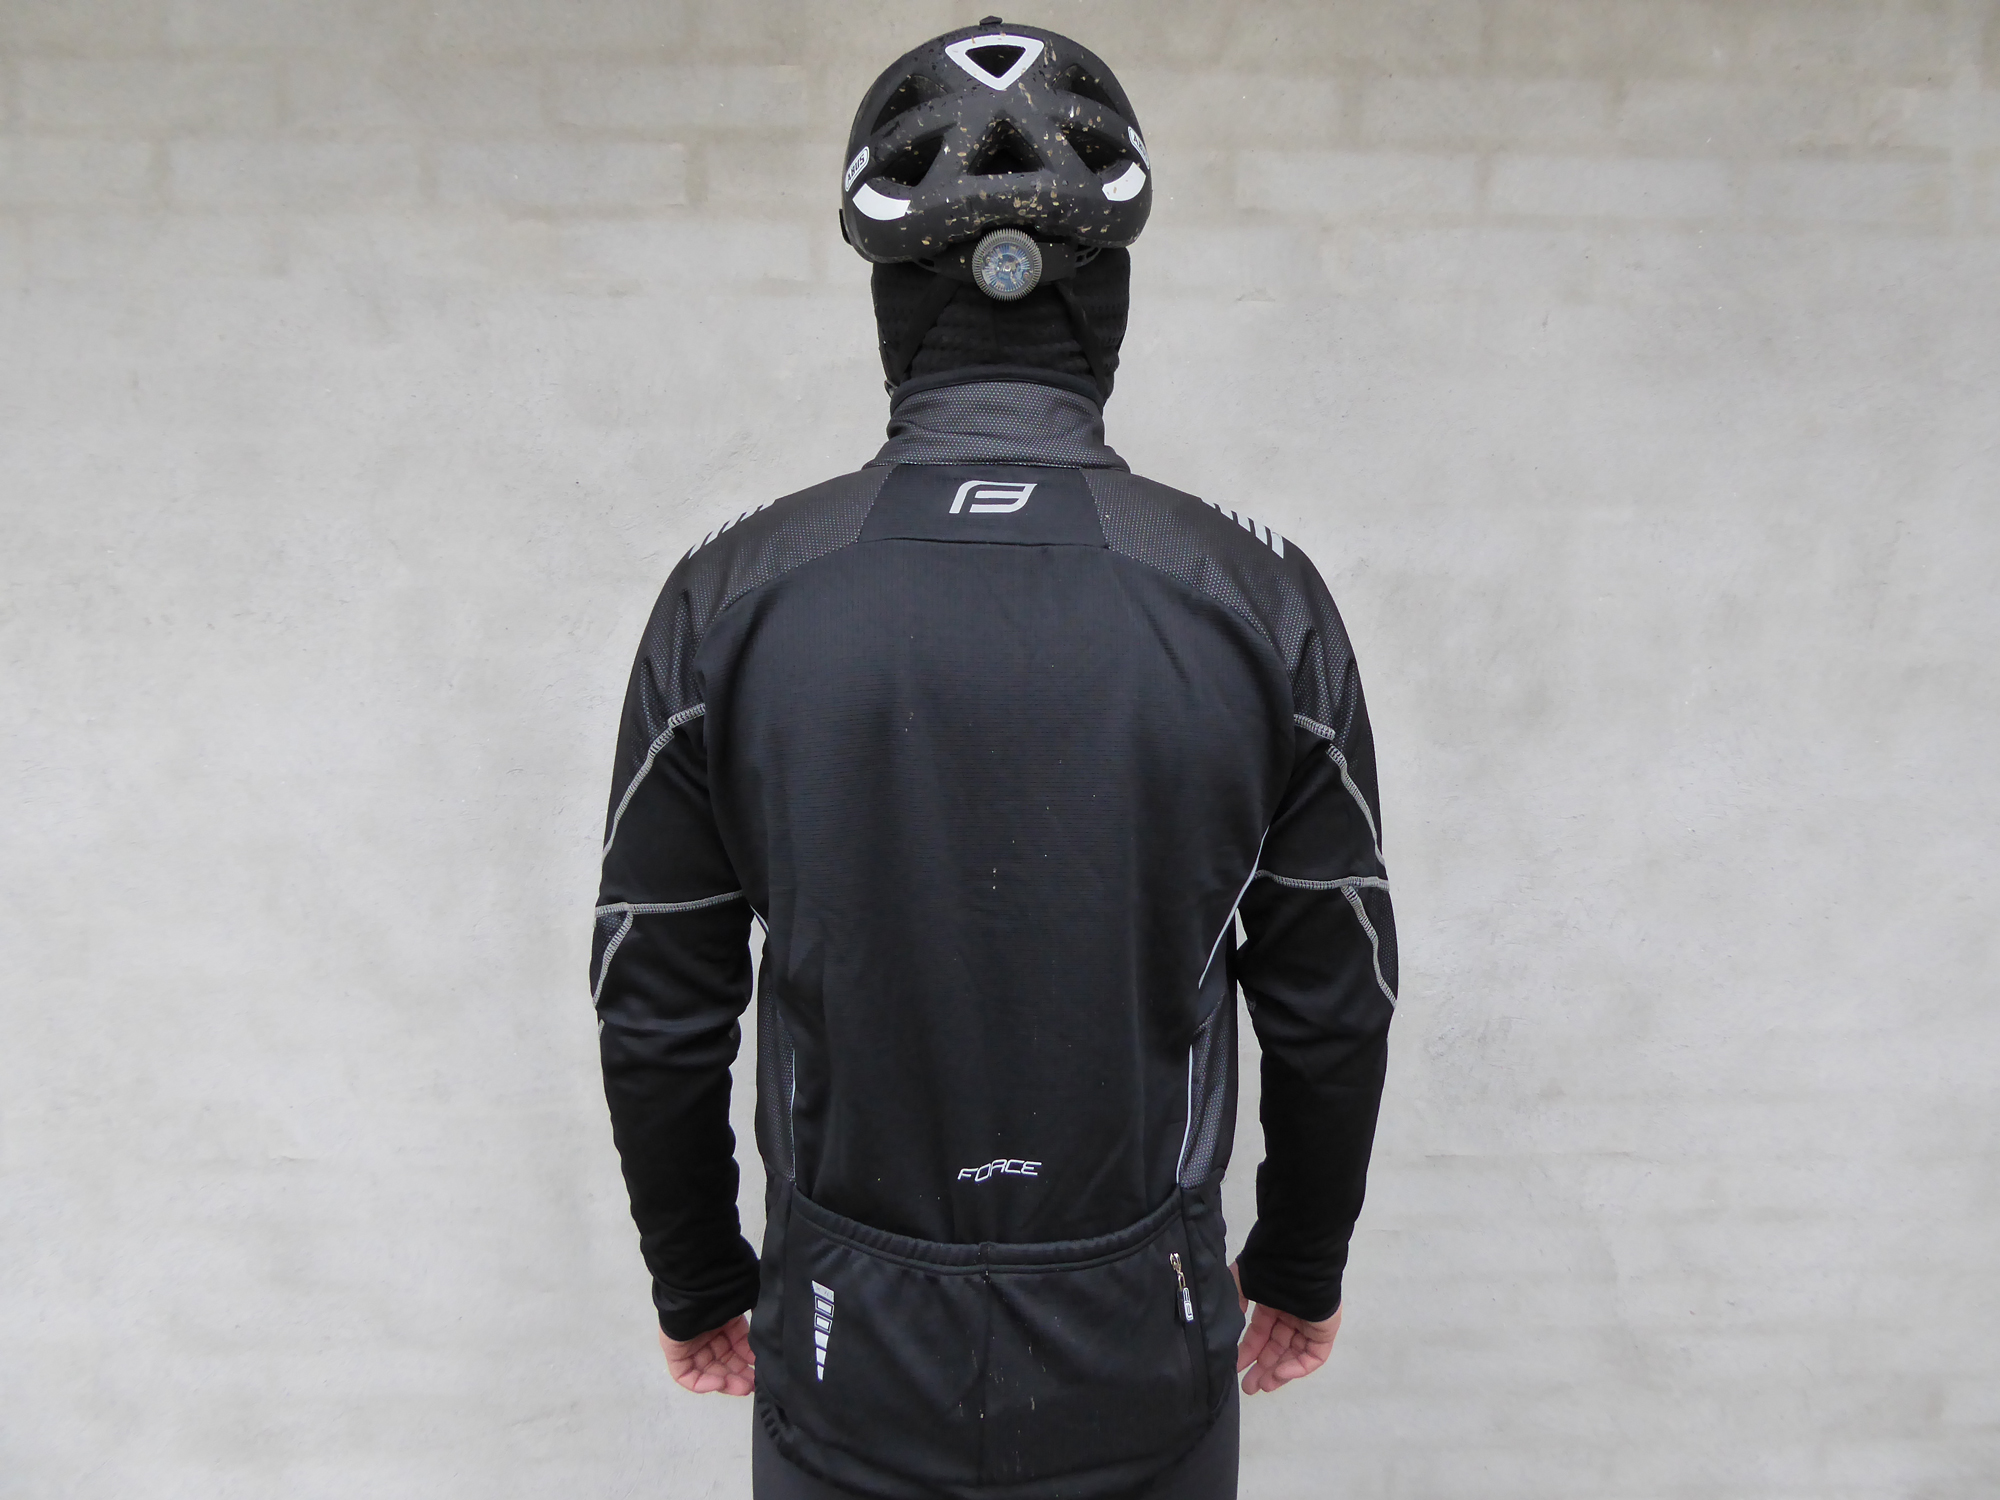 hovedsagelig Afskedige slap af Test: Force X70 cykel jakke | CykelStart.dk